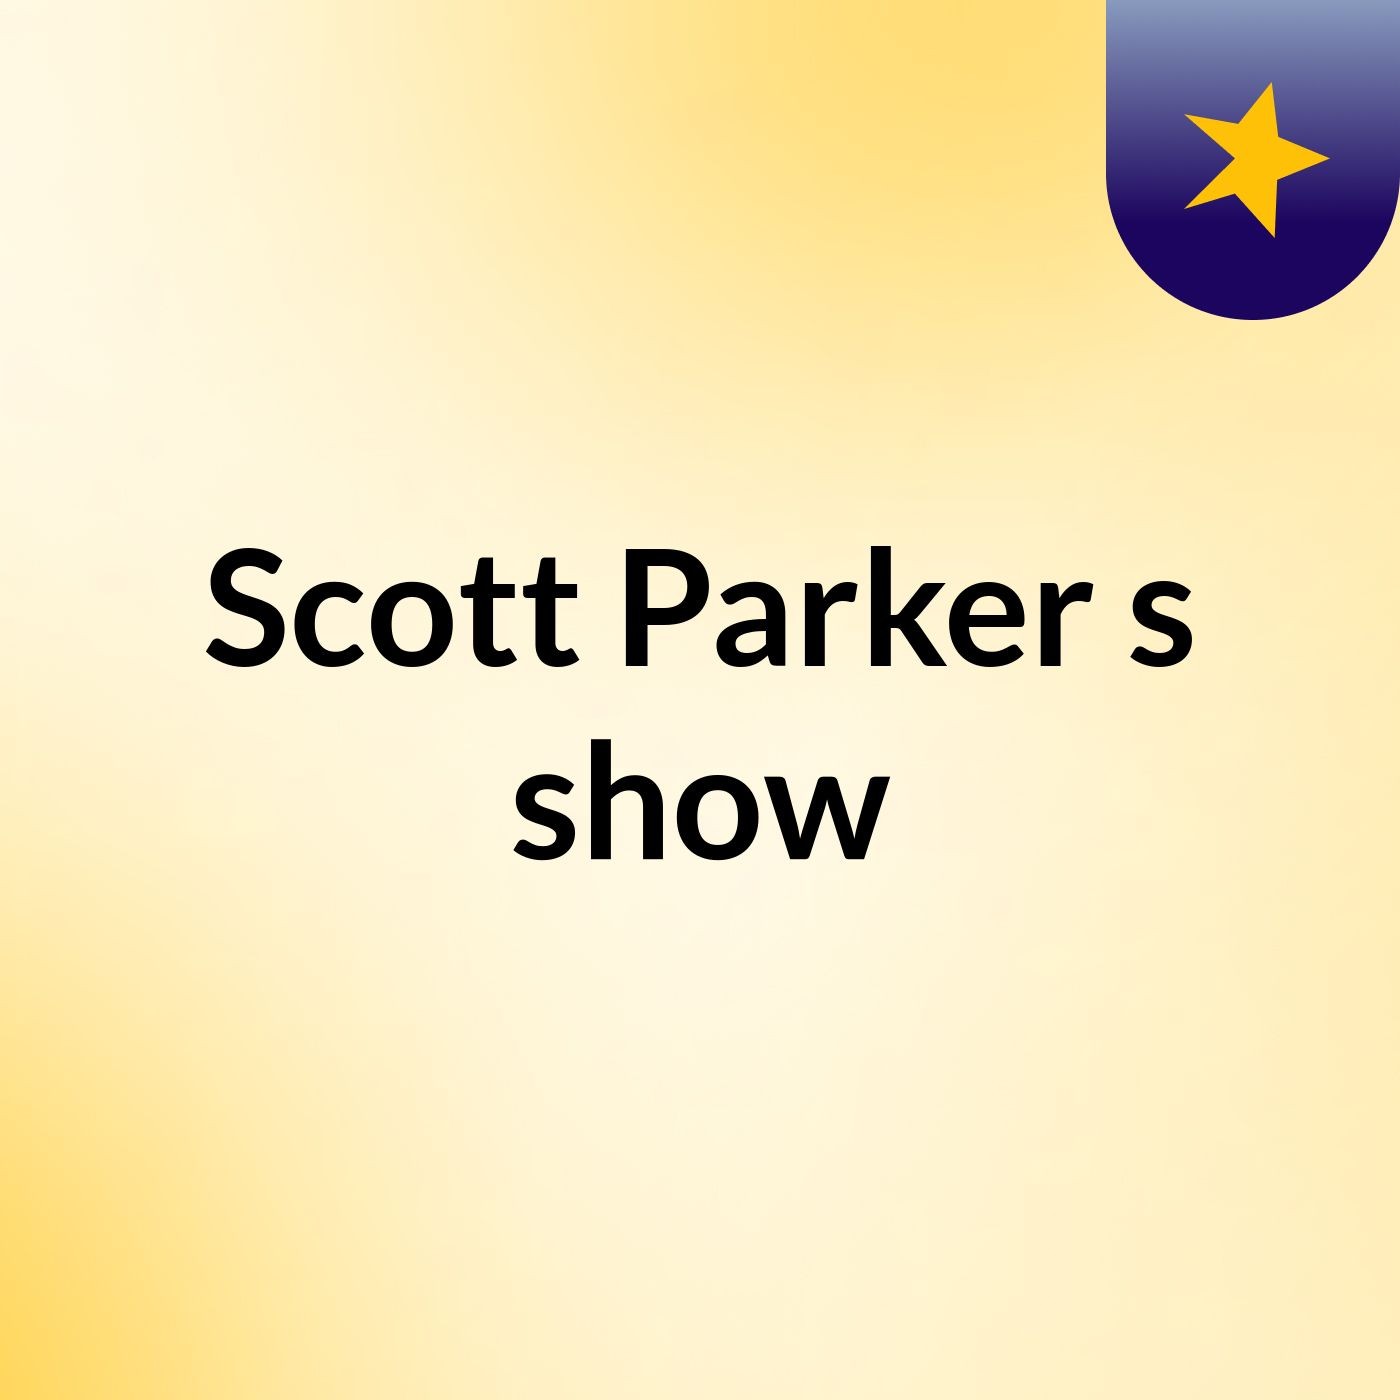 Scott Parker's show